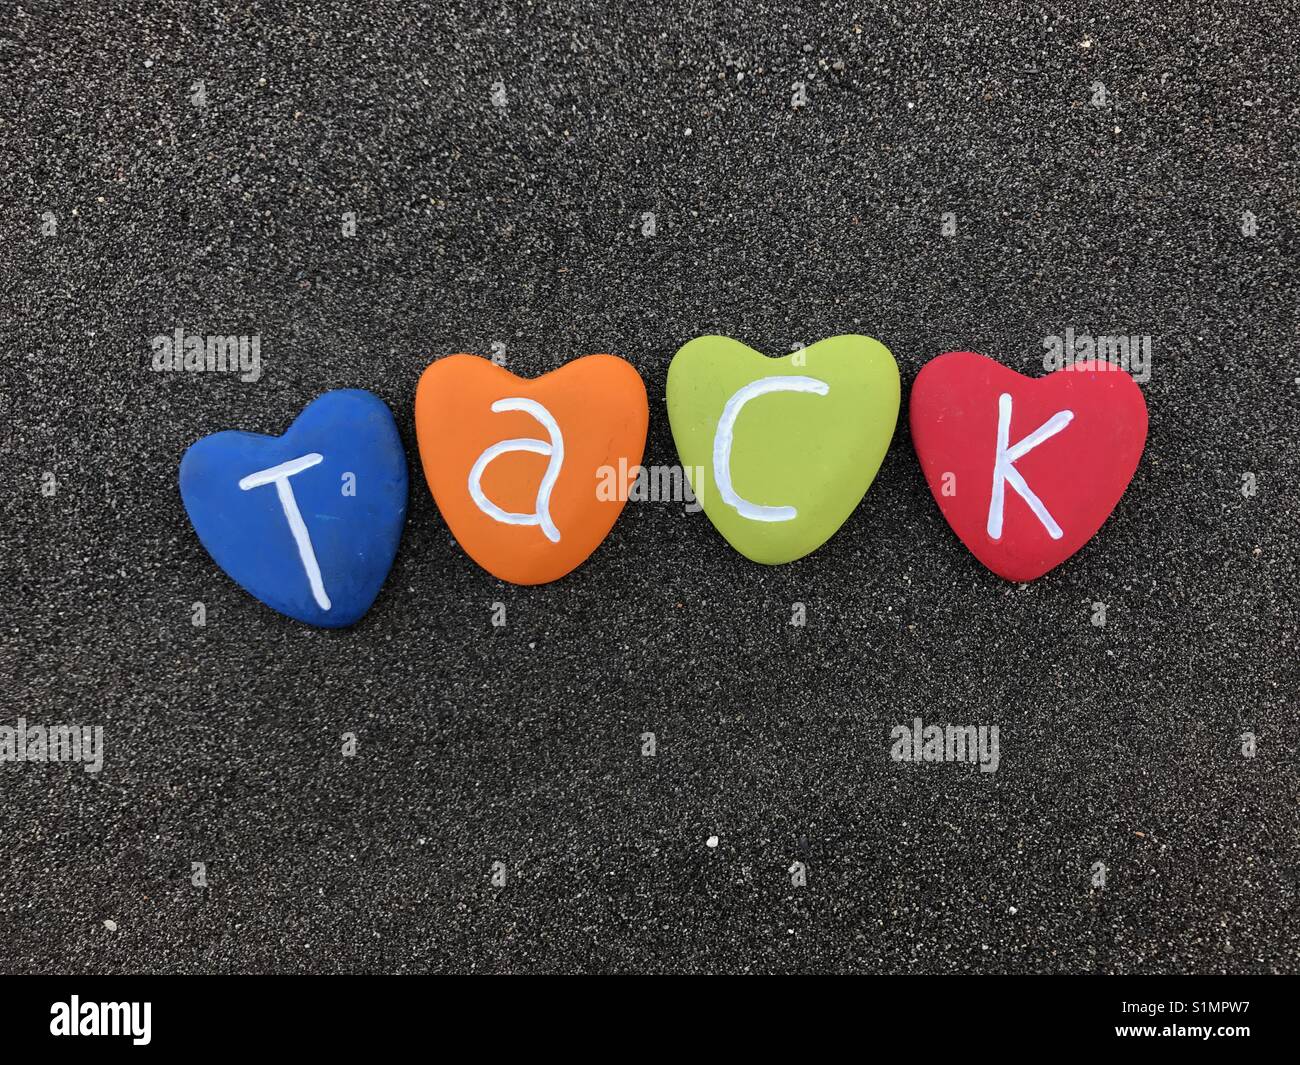 Tack Wort mit bunten Herzen Steine über schwarzen vulkanischen Sand Stockfoto